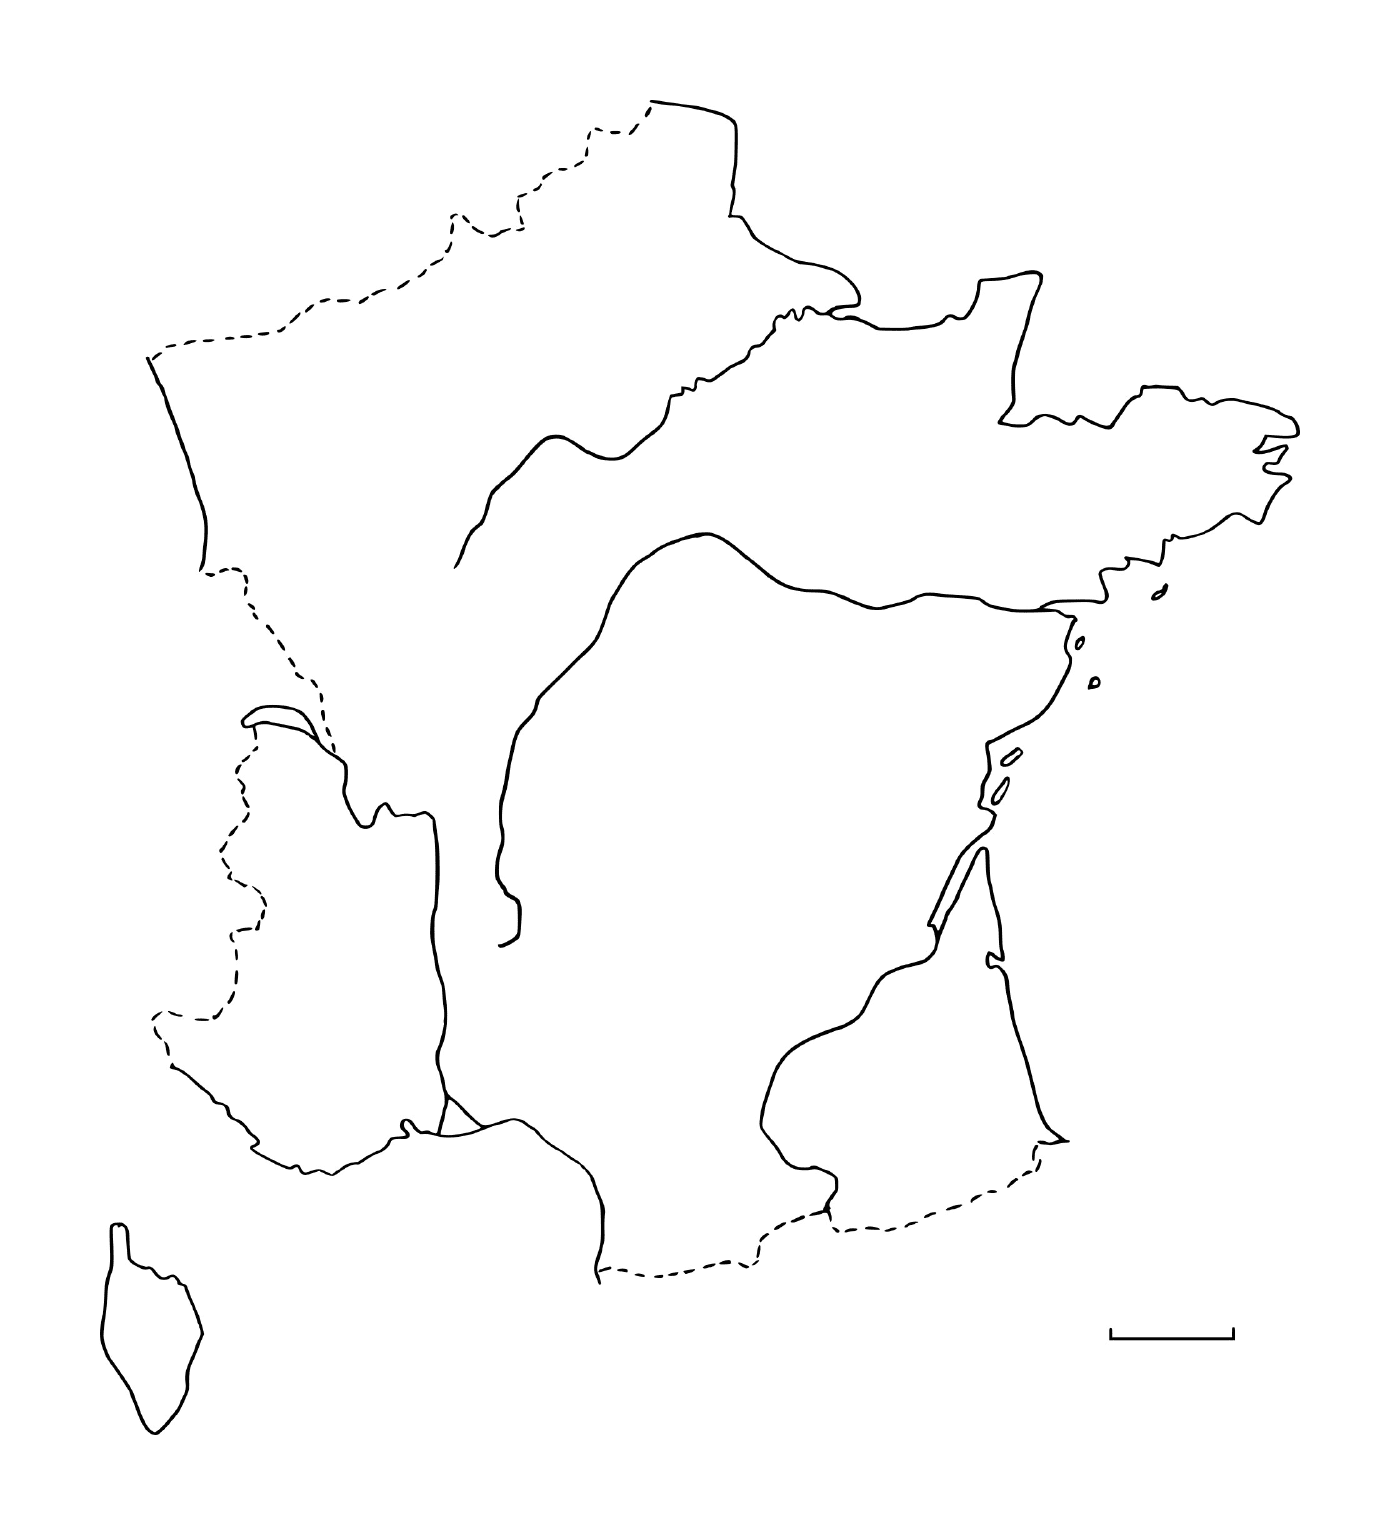  法国处女地图 